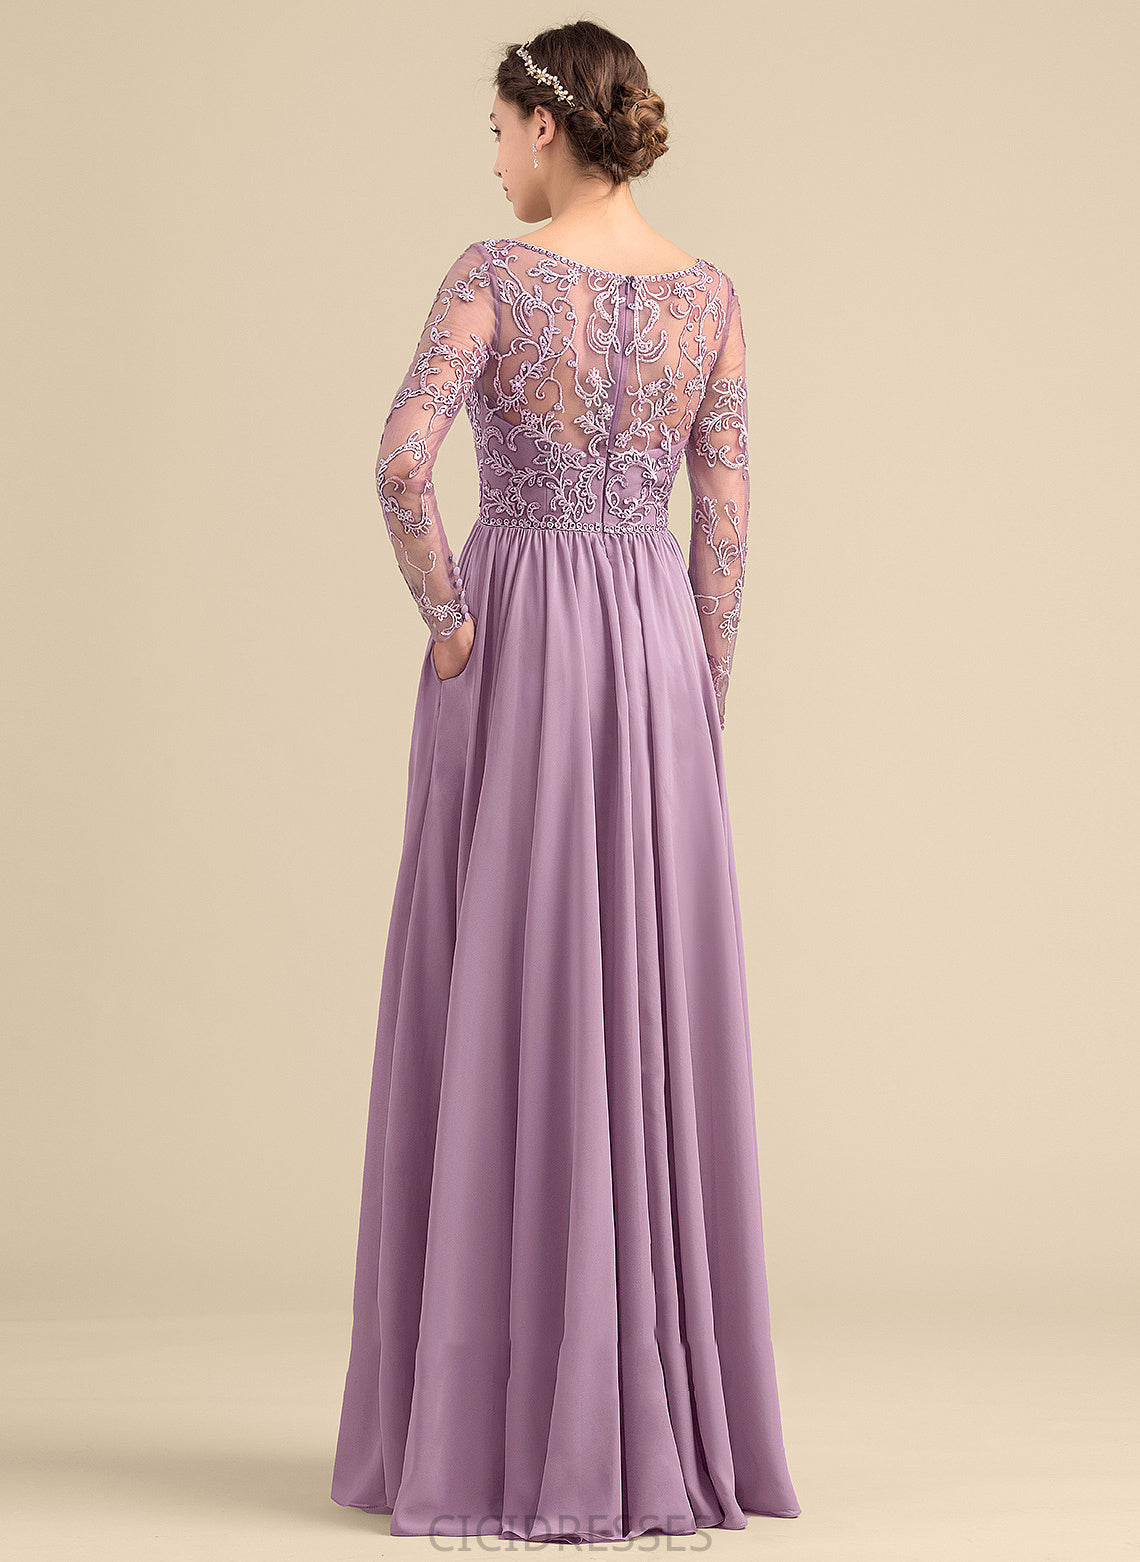 Neckline A-Line Silhouette Length Floor-Length V-neck Beading Embellishment Pockets Fabric Angelique A-Line/Princess Bridesmaid Dresses